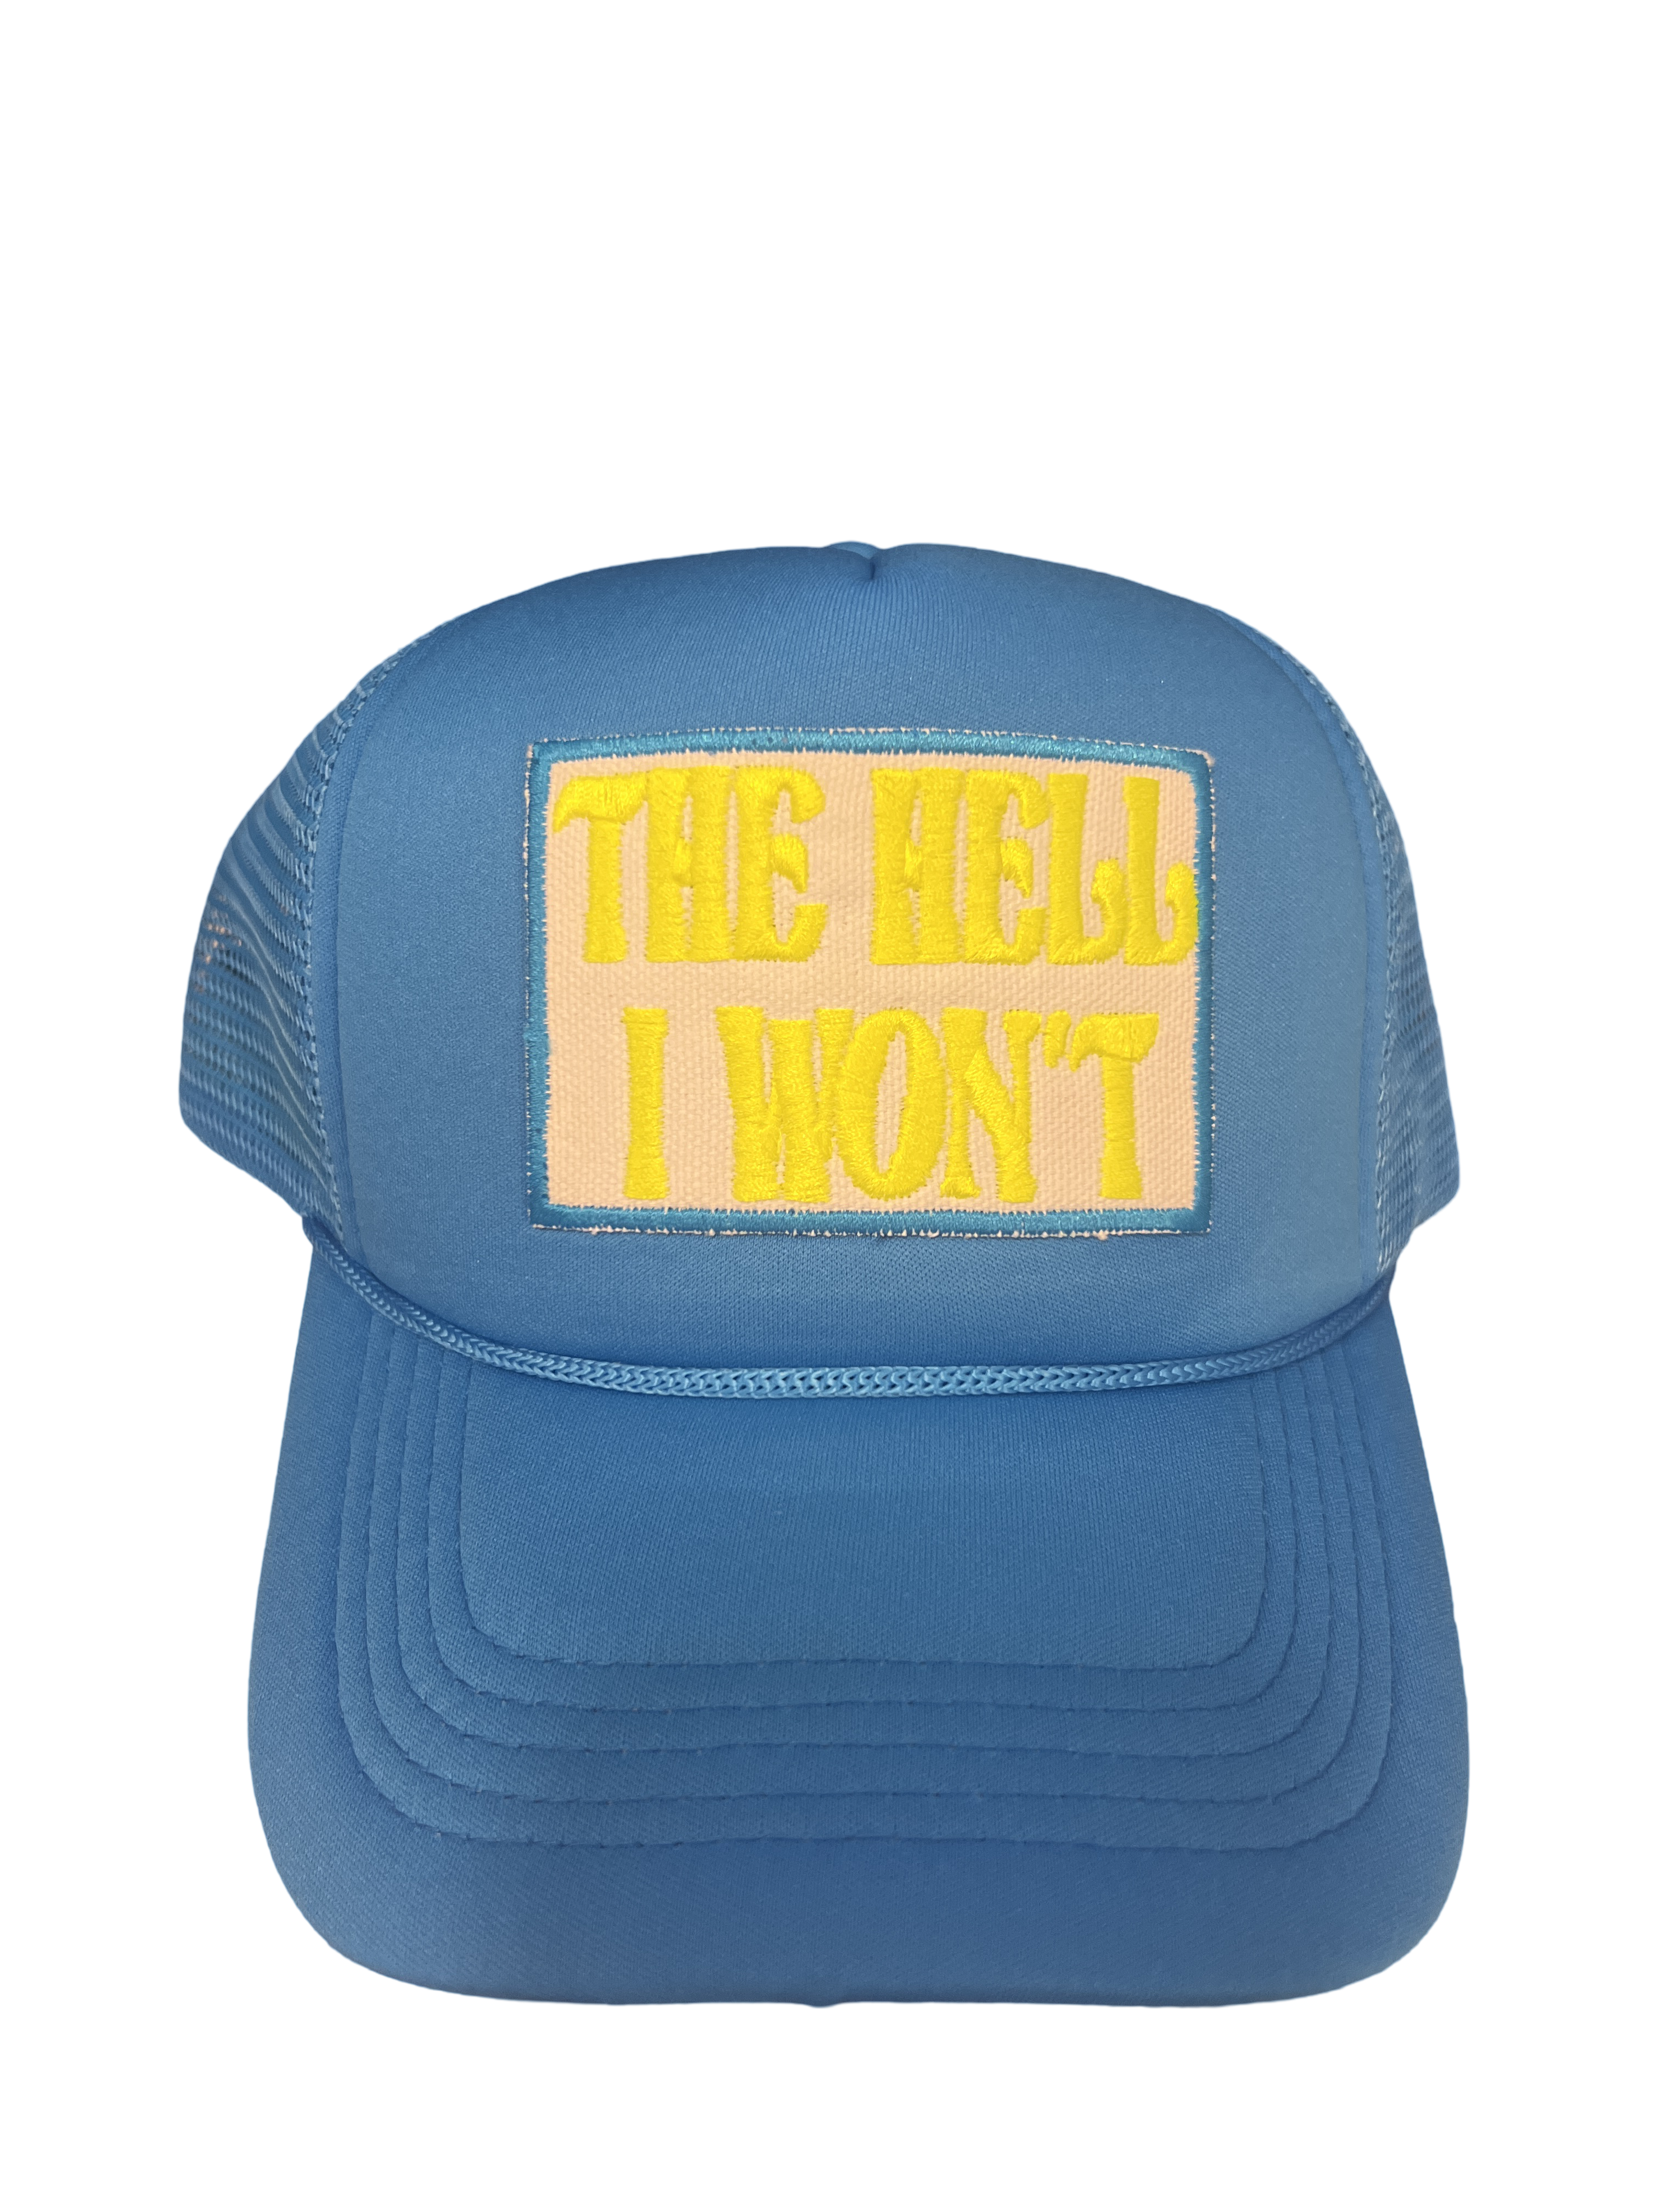 Trucker Hat Foam "The Hell I Won't"